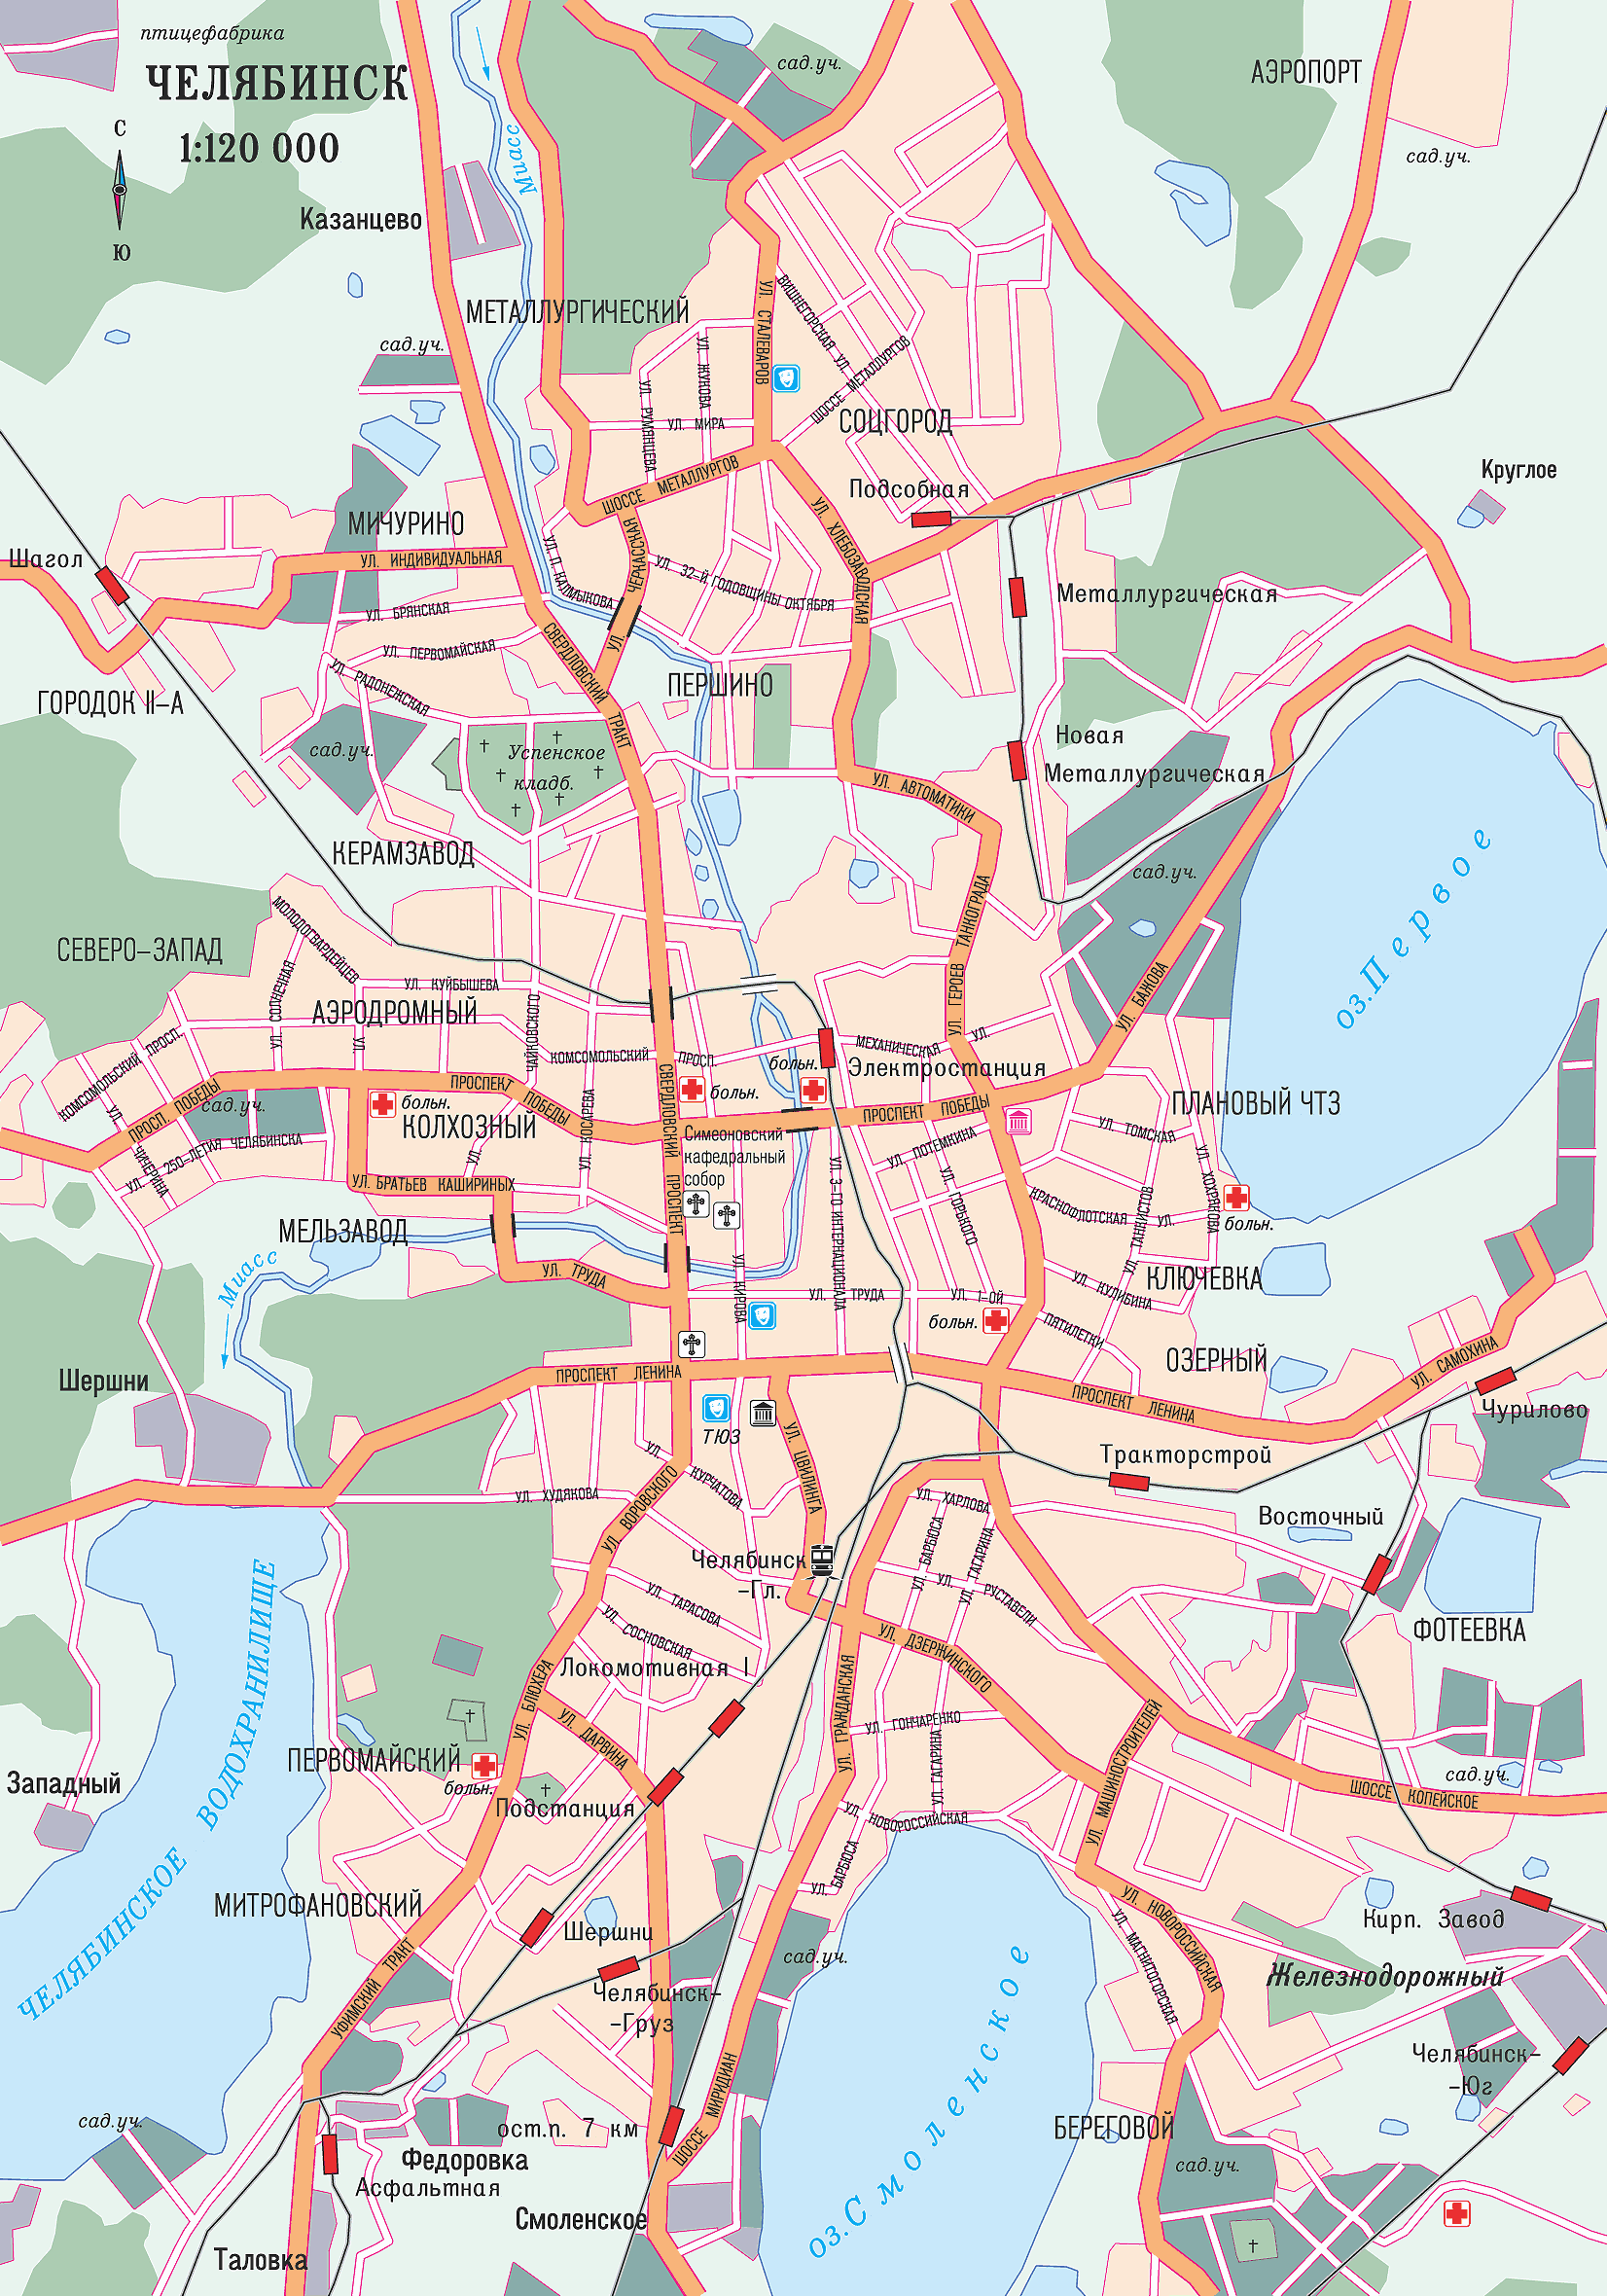 Chelyabinsk center map